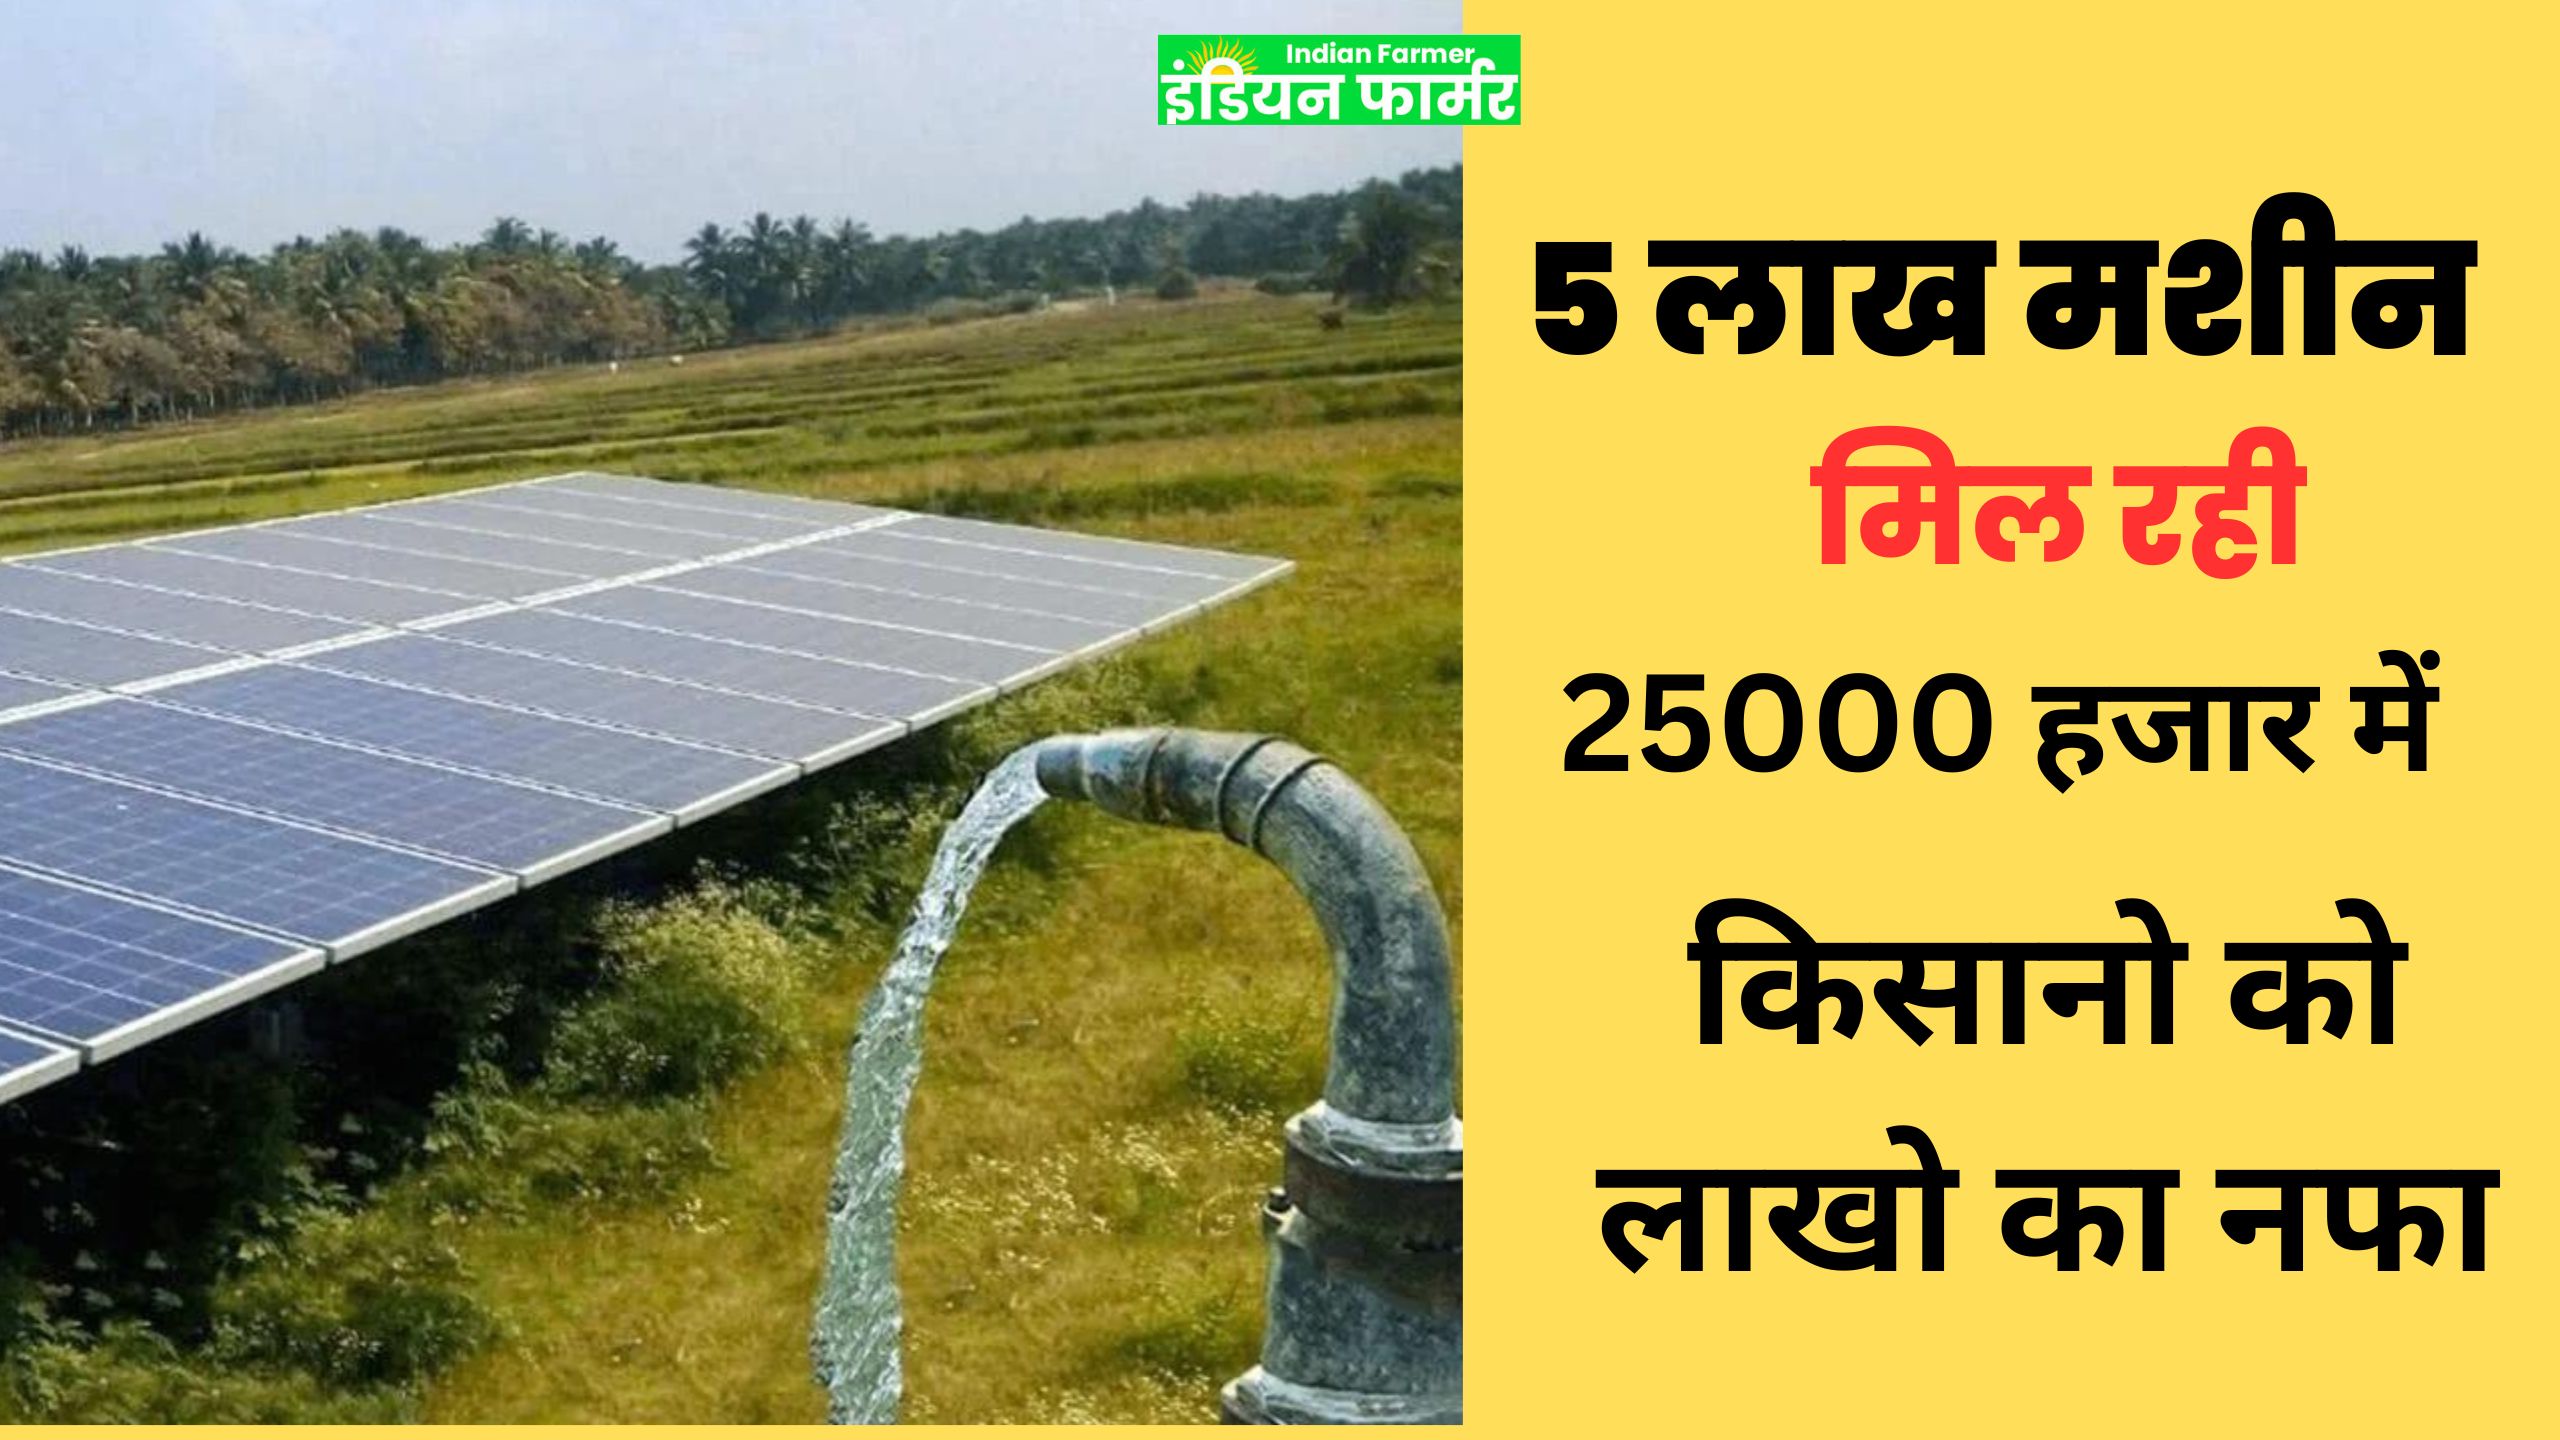 Solar Agriculture Scheme : किसानों ने सरकारी योजना का लाभ उठाकर किया ऐसा जुगाड कि अब २४ घंटे रहेगी खेत मे बिजली !